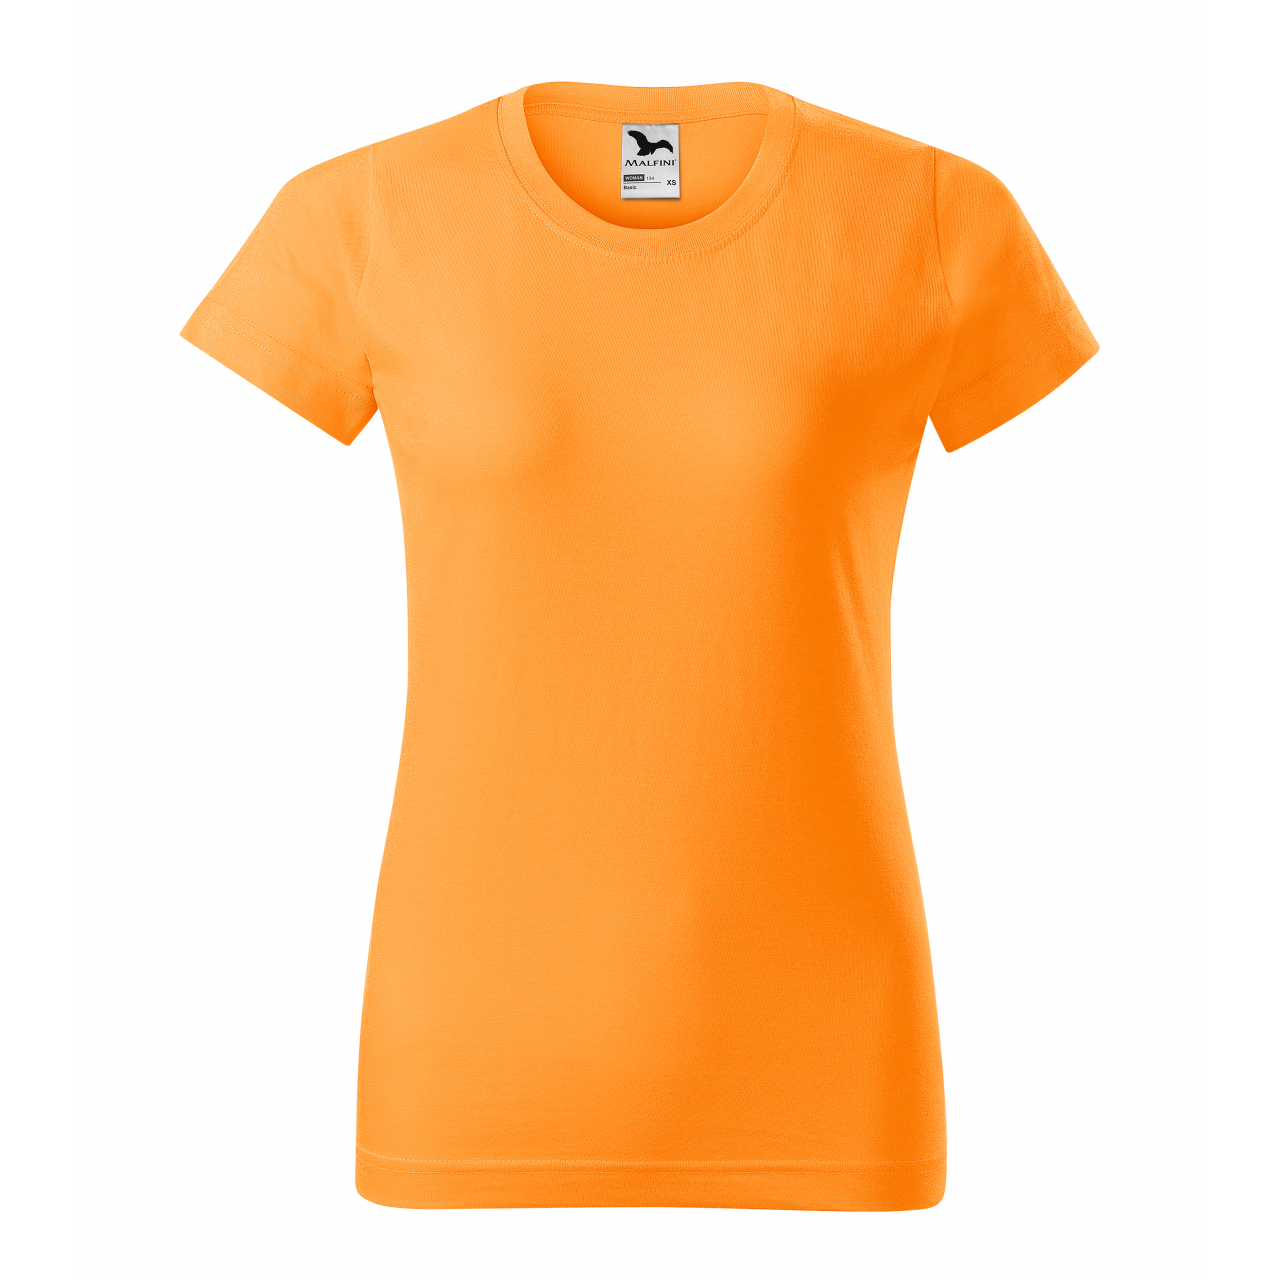 Triko dámské Malfini Basic - světle oranžové, XS